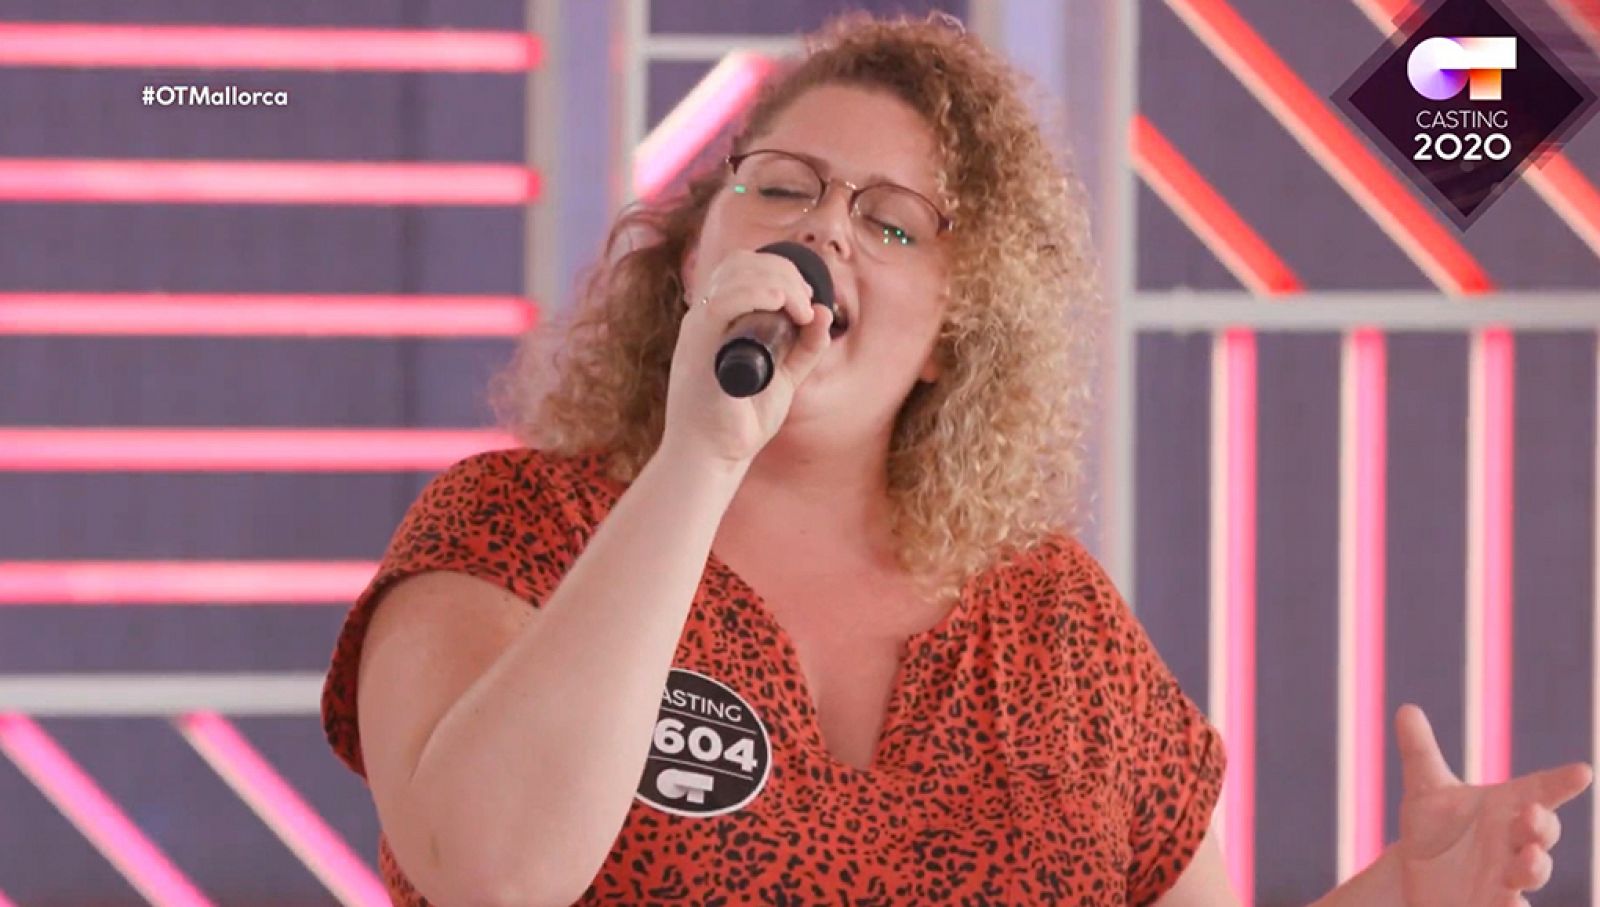 Inma canta una canción de "Grease" en la fase 2 del casting OT 2020 Palma de Mallorca